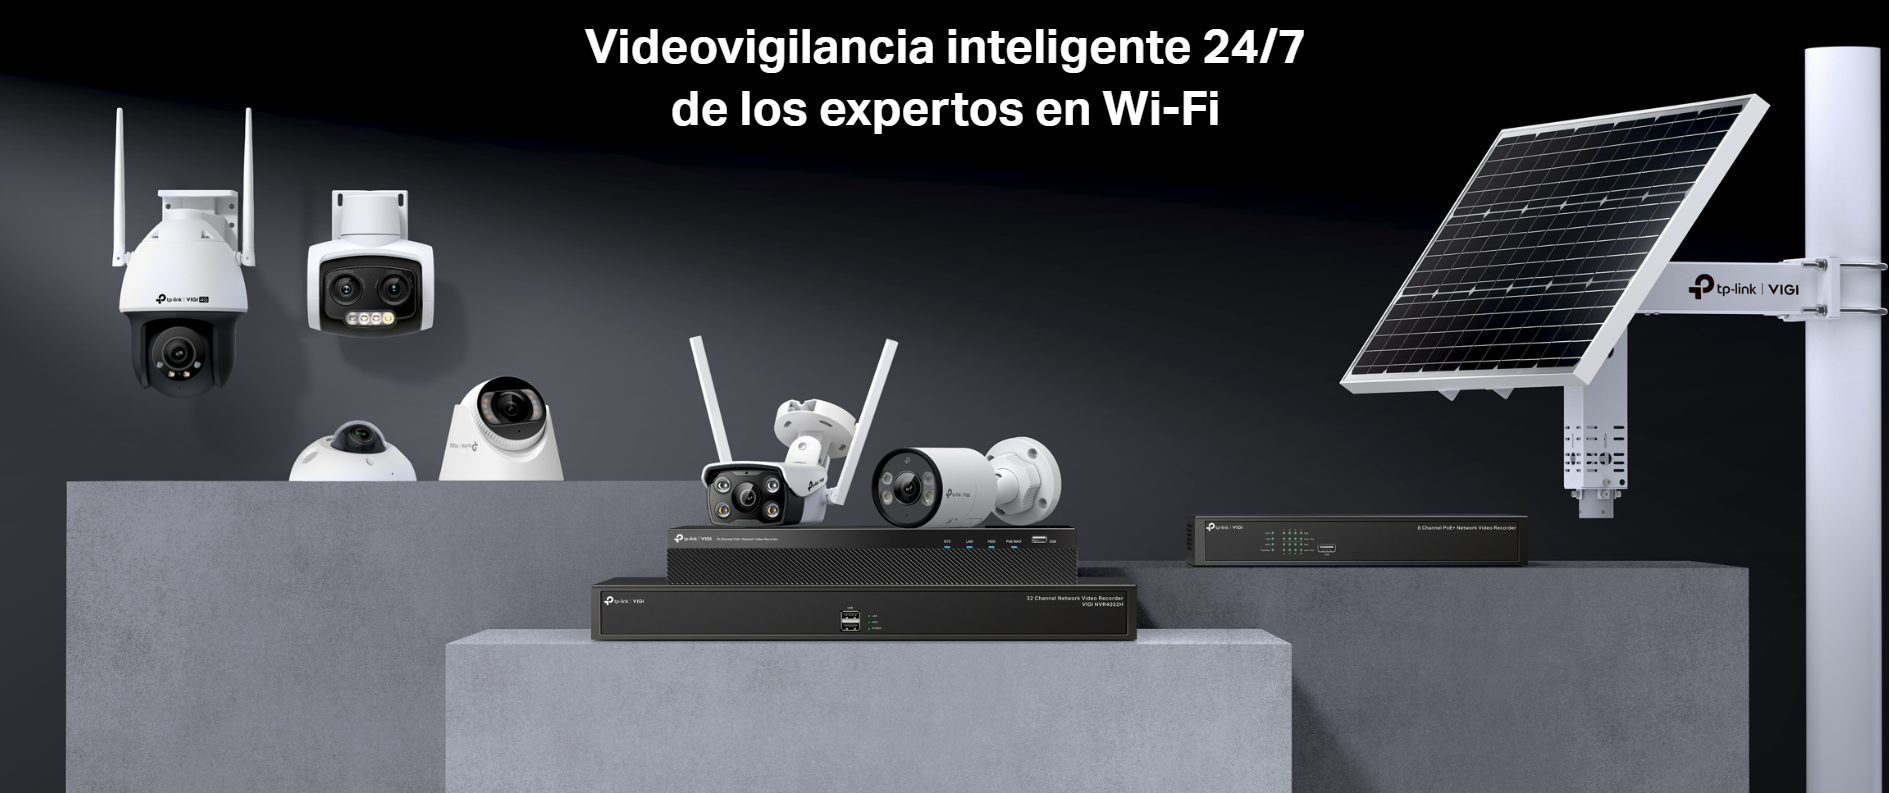 Videovigilancia inteligente 24/7 de los expertos en Wi-Fi